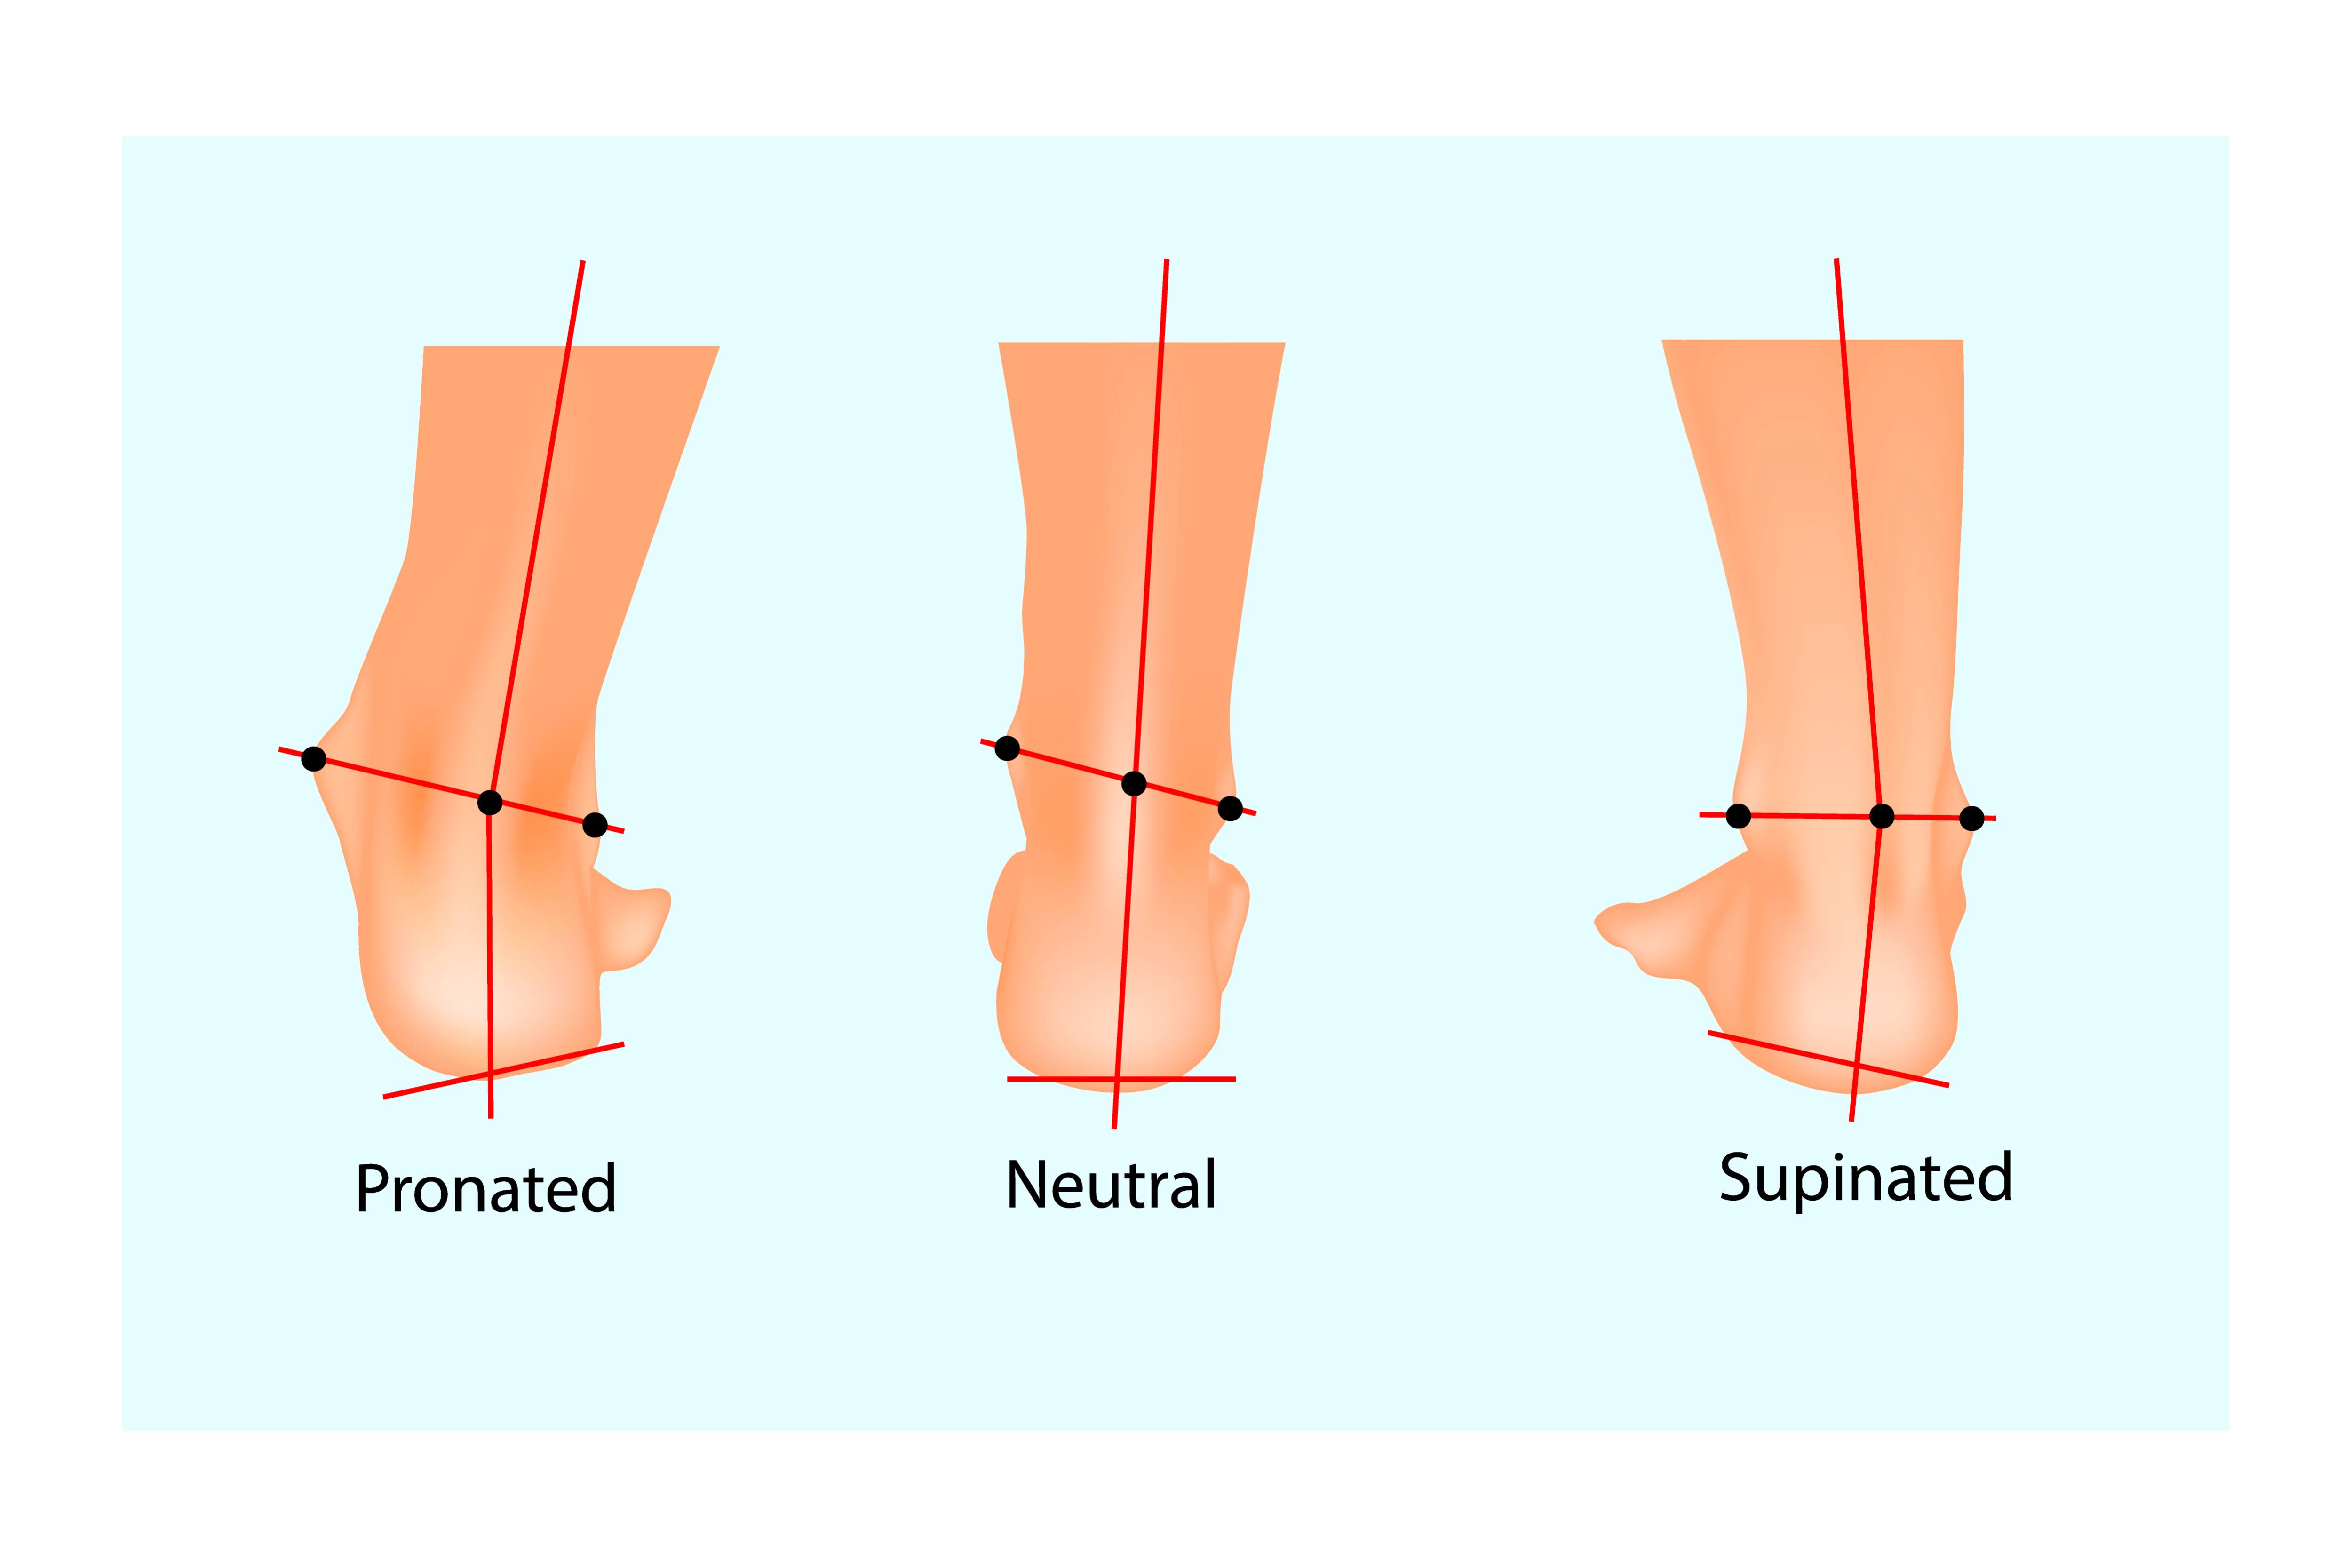  Slika predstavlja biomehaniko treh položajev stopala - pronacija, nevtralno in supinacija. 